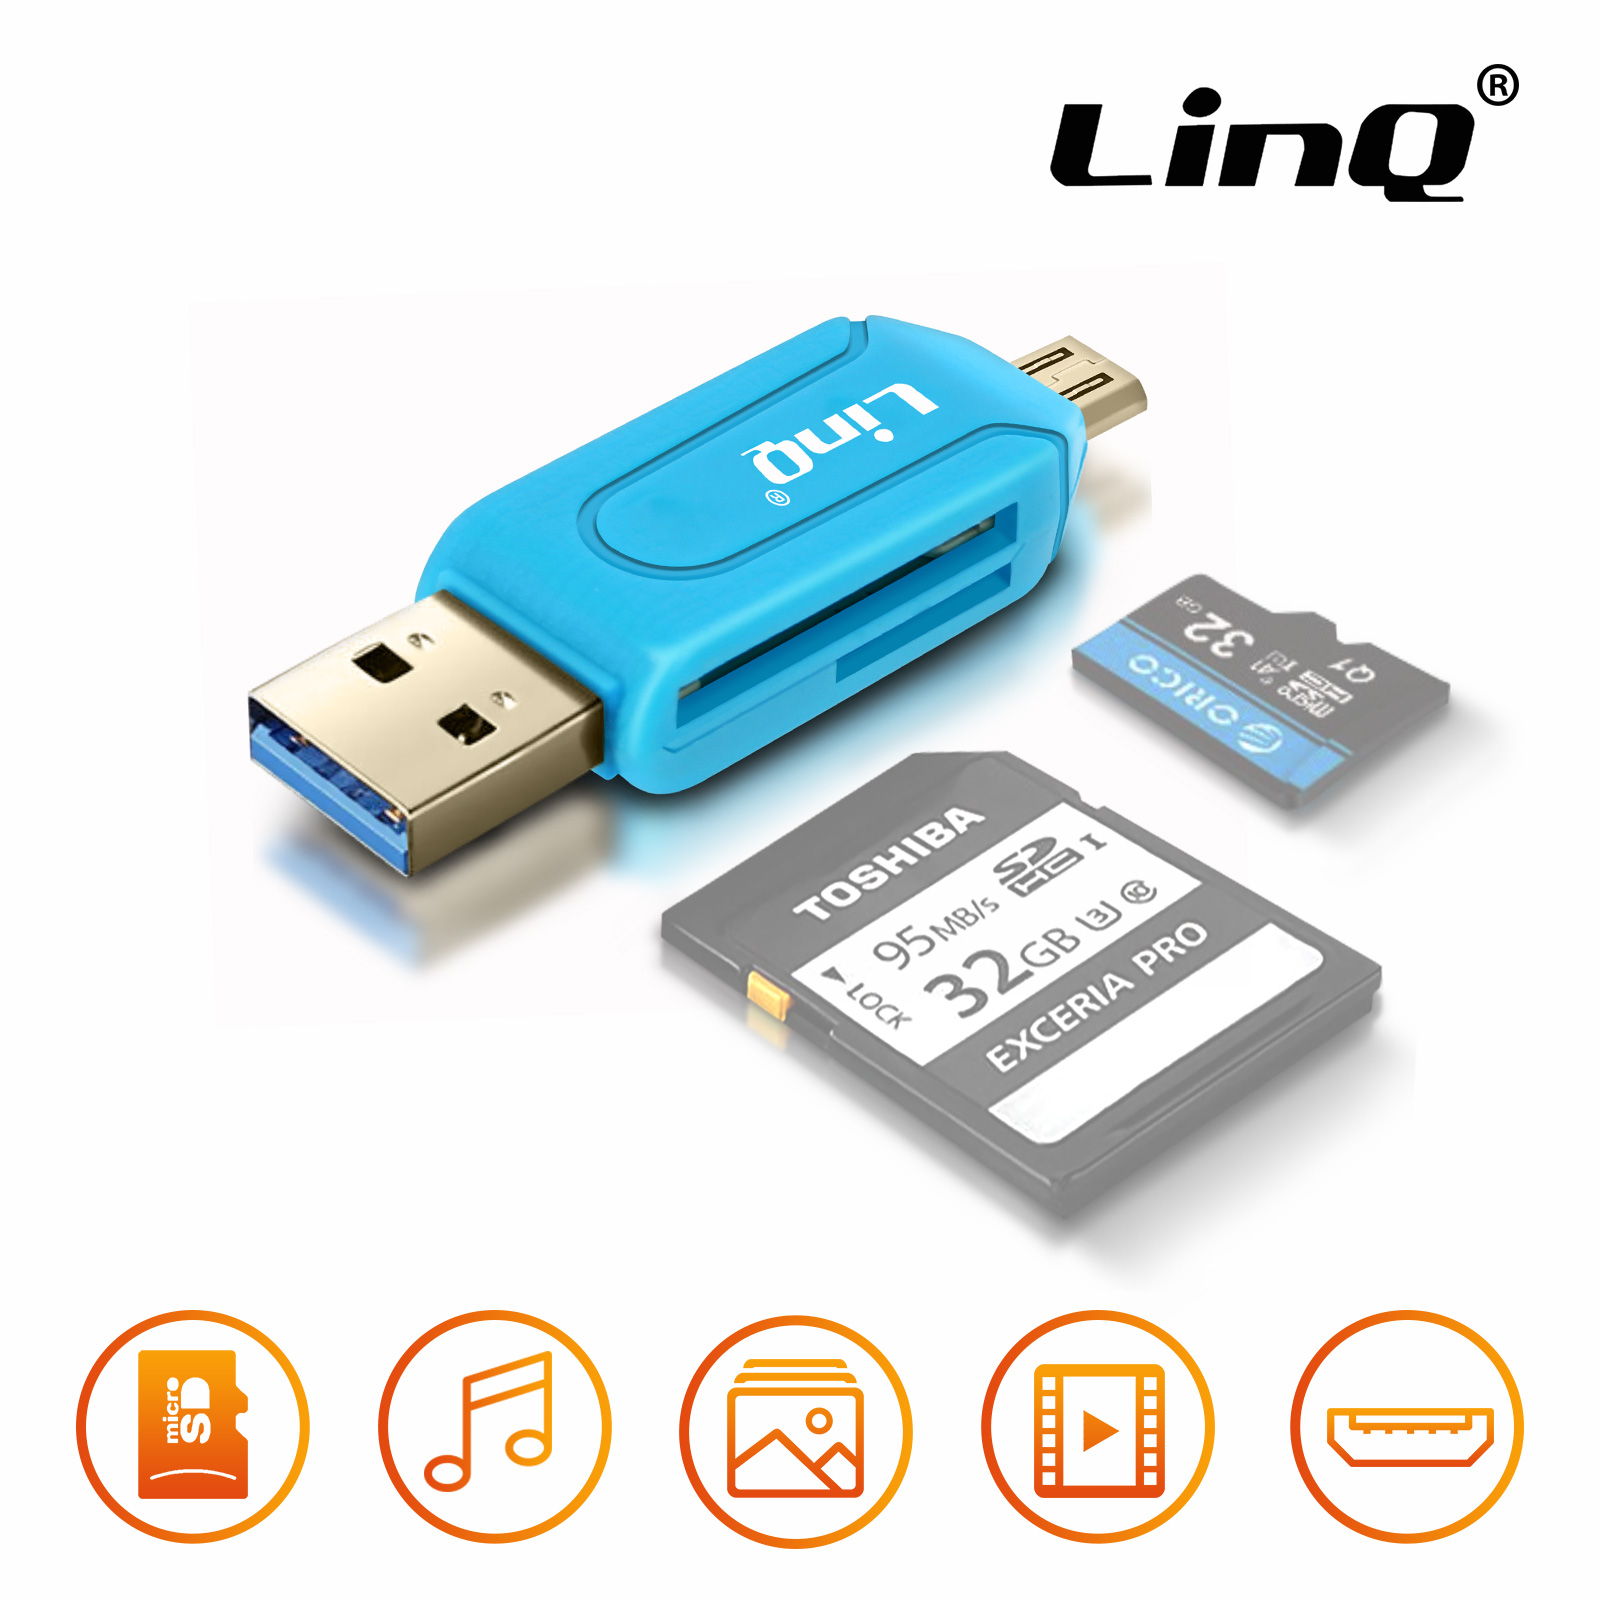 Kingston - Clé USB pour Tablette et Smartphone Micro-USB DataTraveler